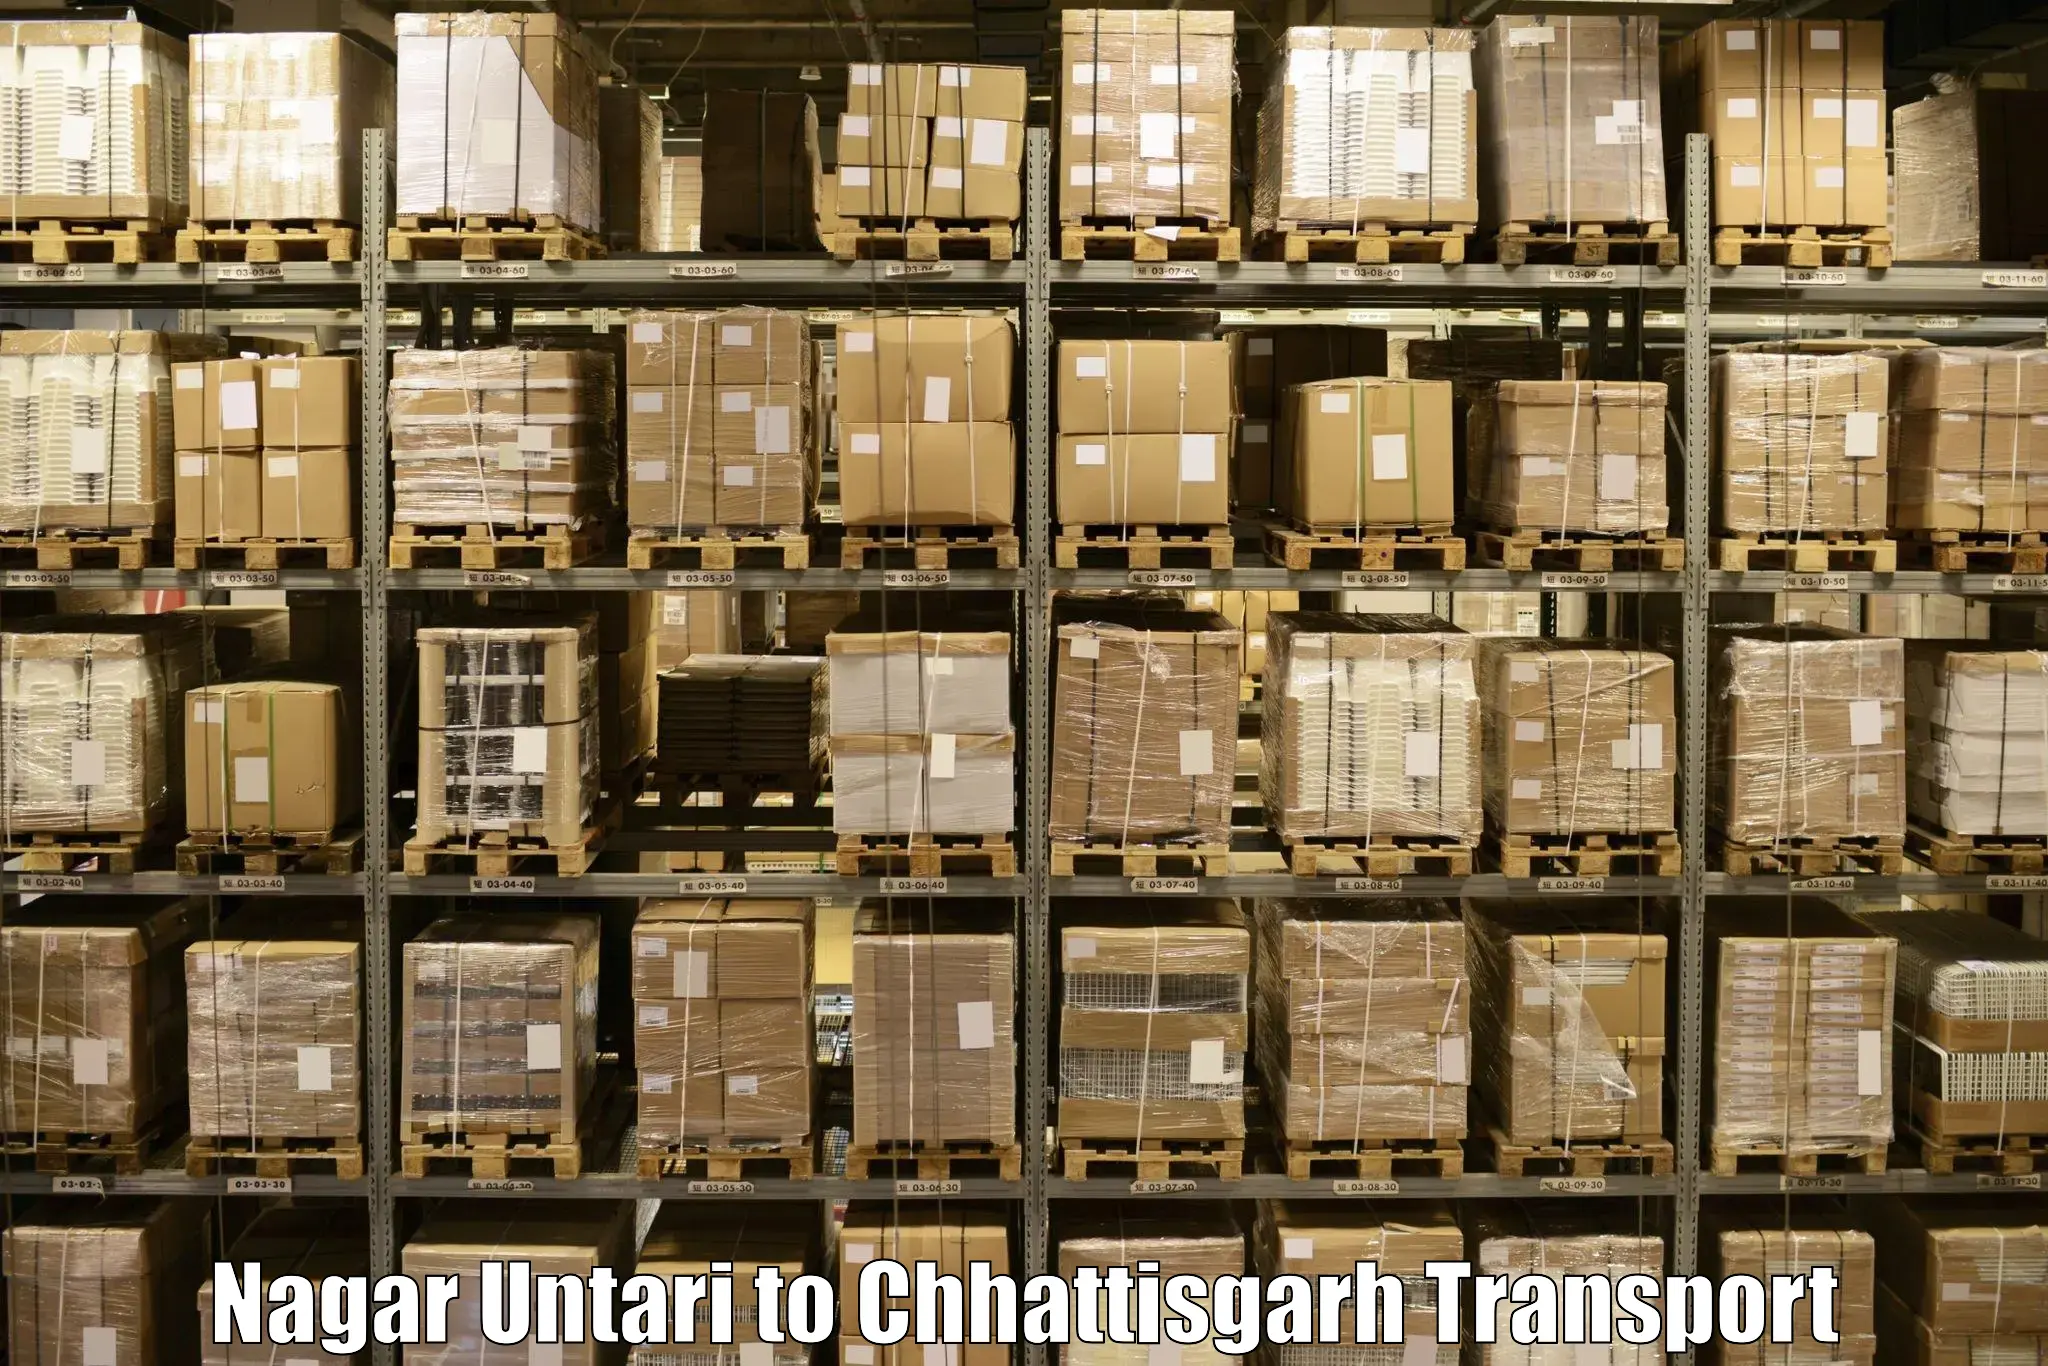 Commercial transport service Nagar Untari to Mahasamund